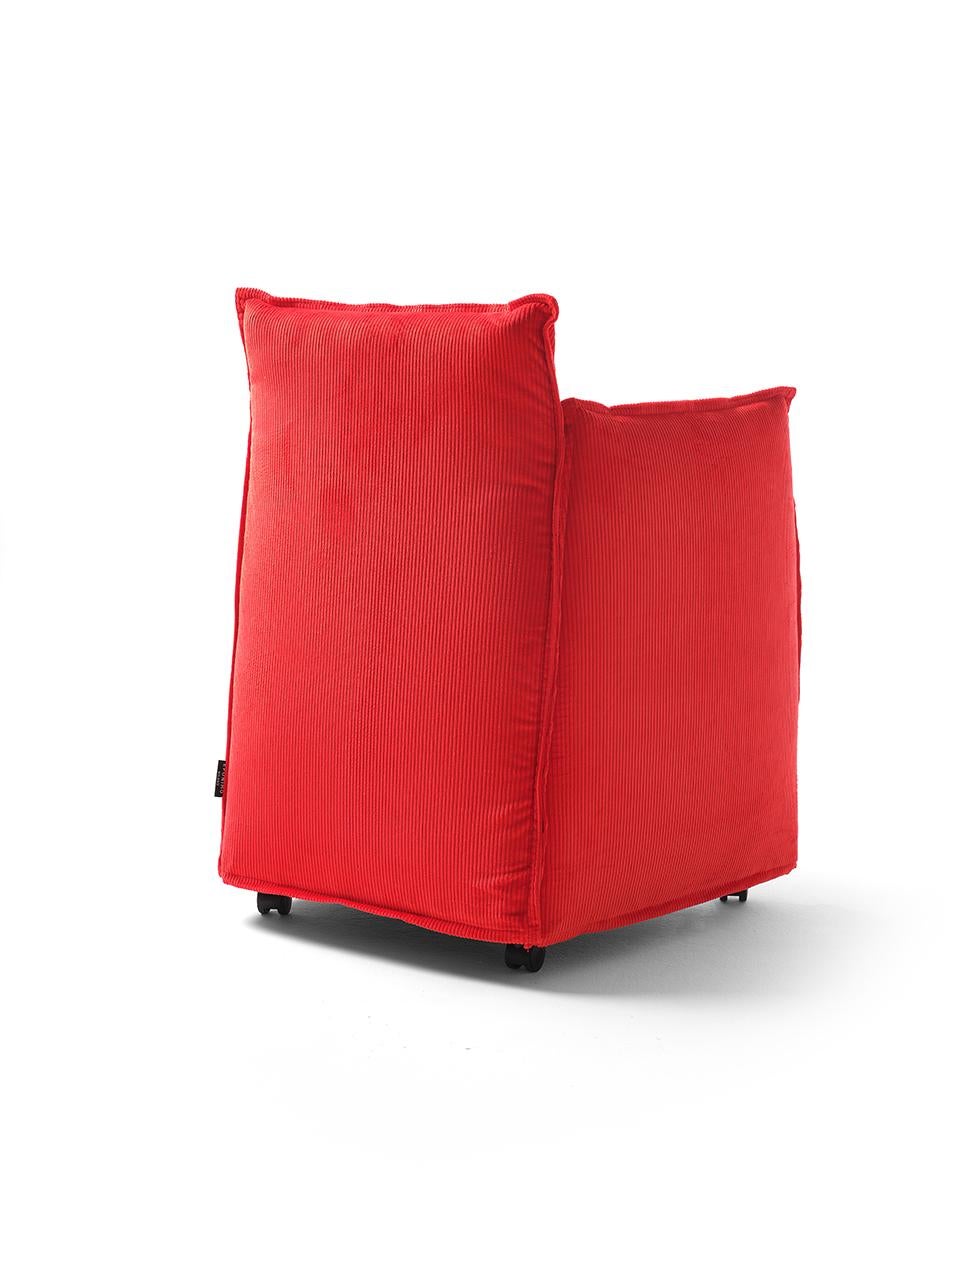 Medven est un fauteuil textile composé de plusieurs cadres en acier qui sont tapissés individuellement puis assemblés. La couverture délibérément abondante et le remplissage interne souple confèrent au fauteuil un caractère informel et accueillant.